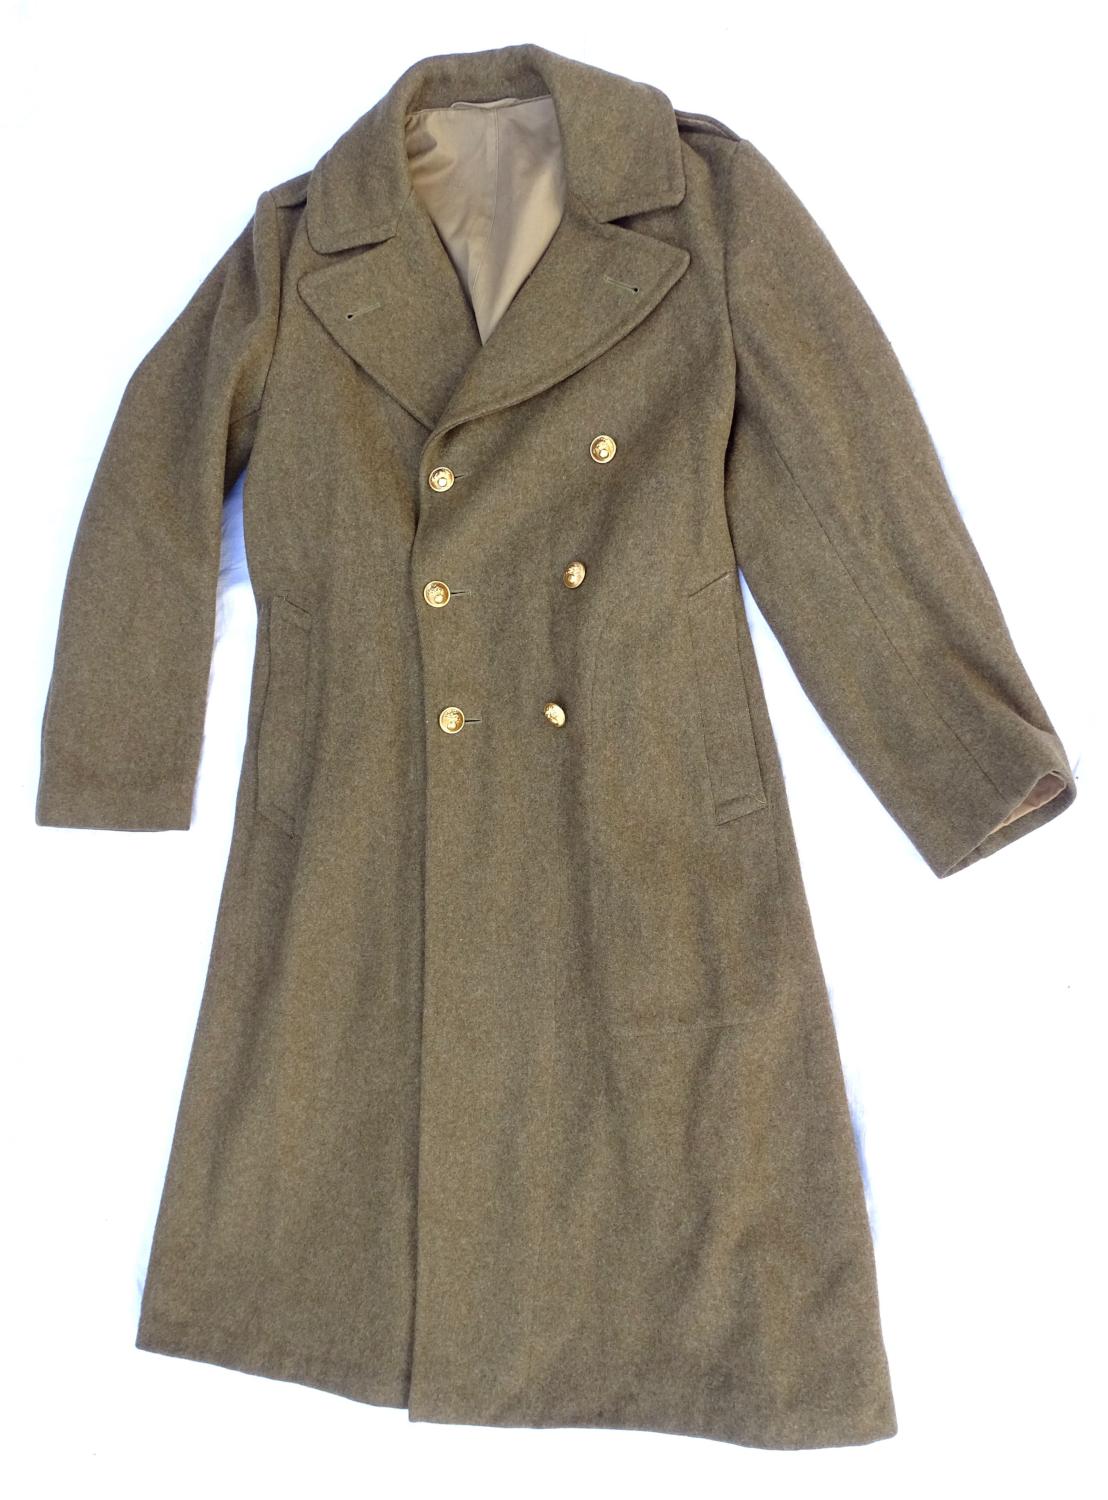 Overcoat wool melton OD 36L 1943